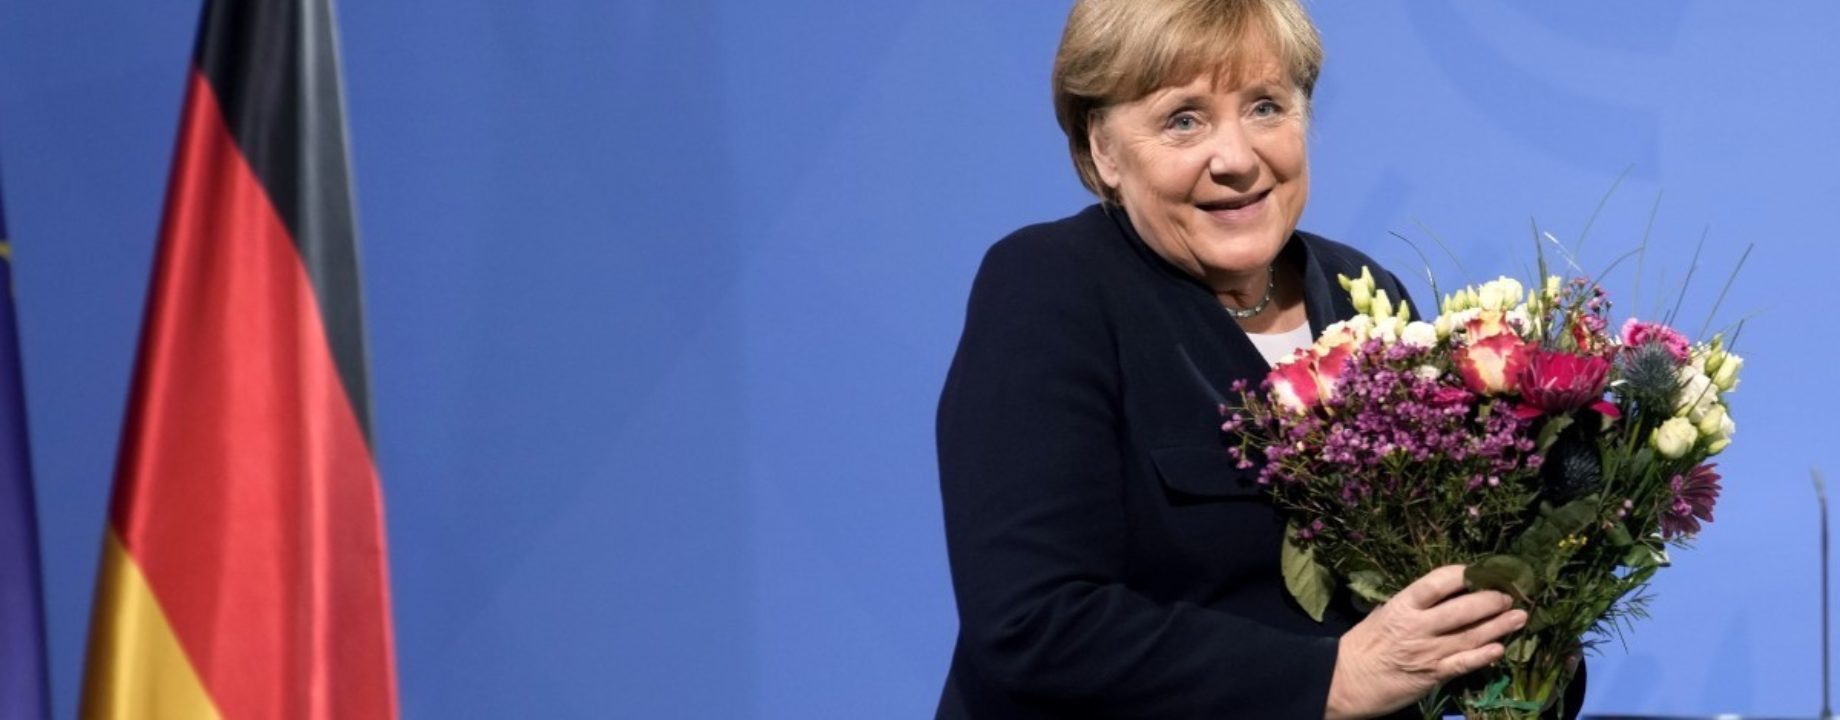 Merkel the economist